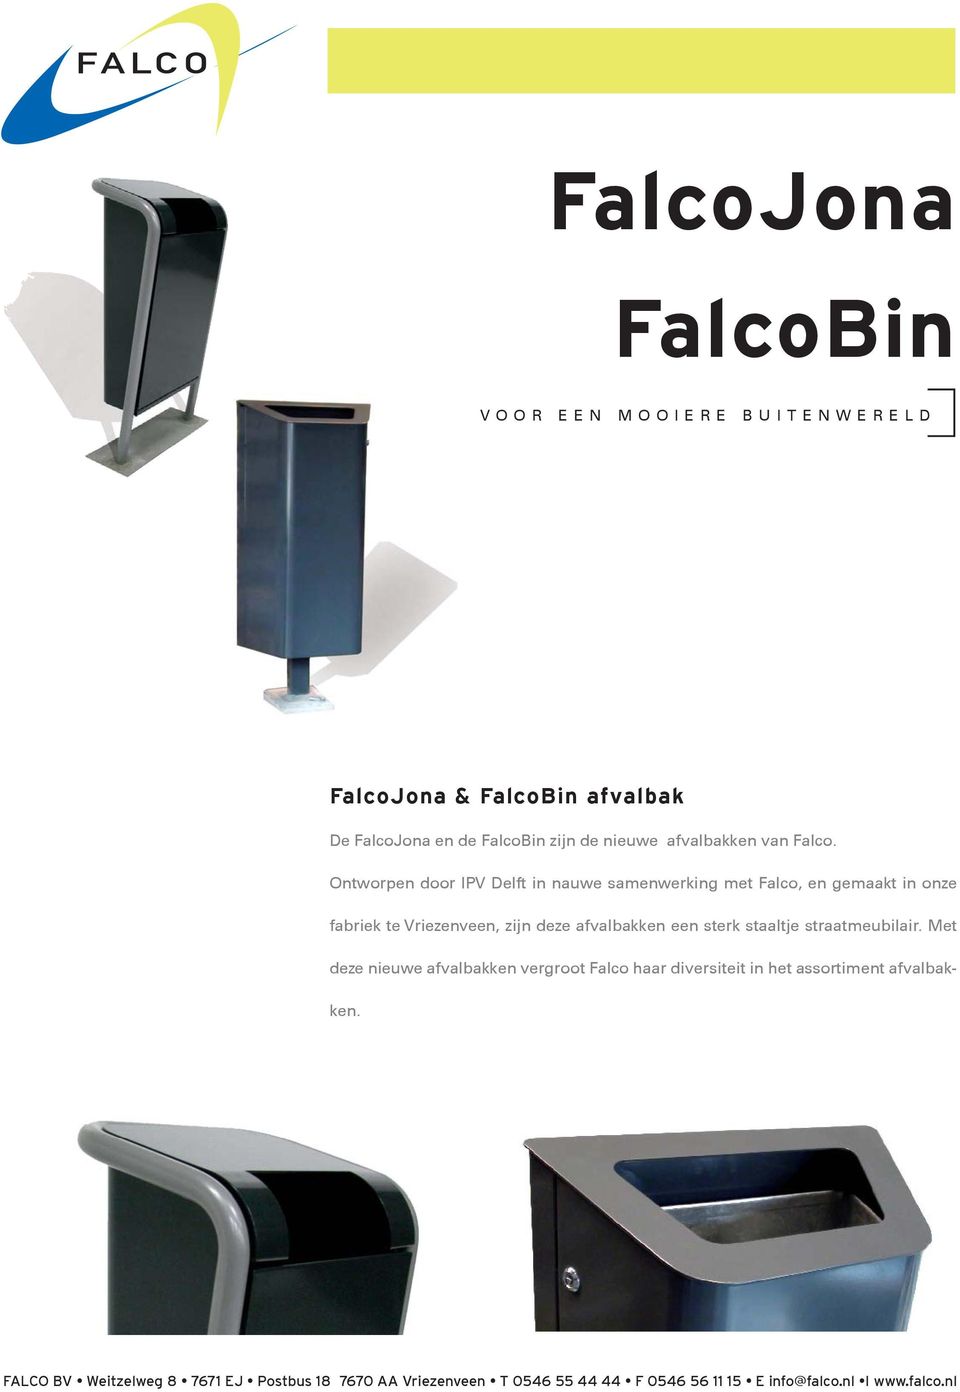 Ontworpen door IPV Delft in nauwe samenwerking met Falco, en gemaakt in onze fabriek te